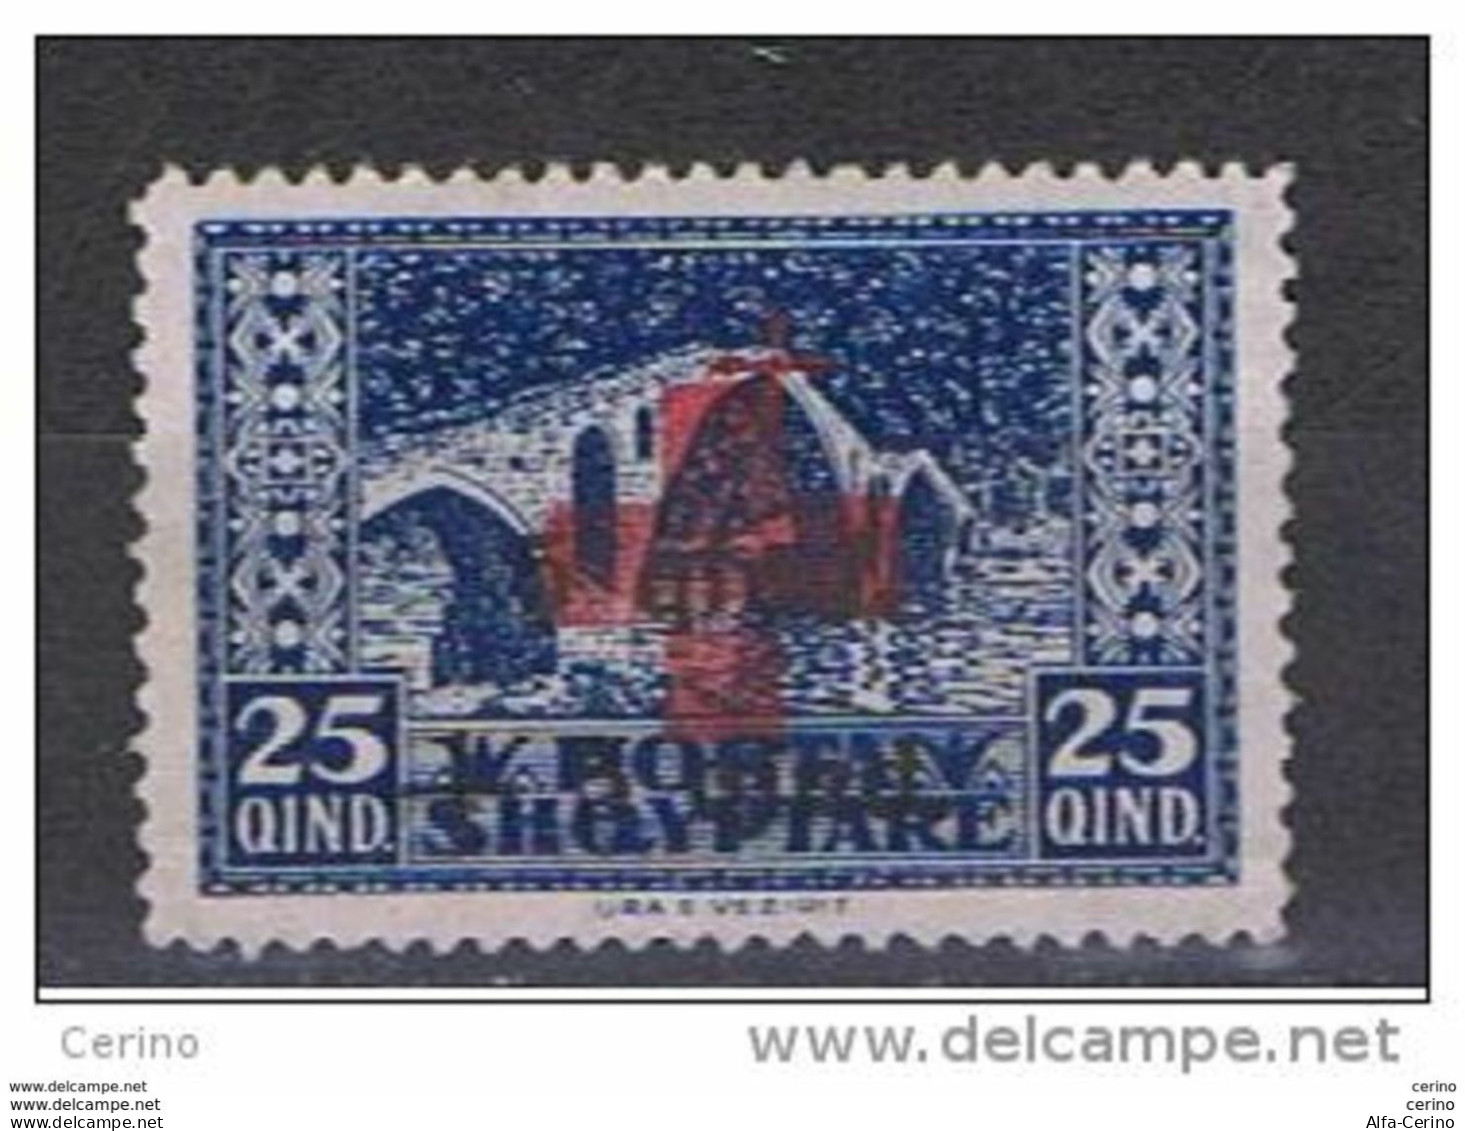 ALBANIA:  1924  SOPRASTAMPATO  -  15 Q. /5 Q. /25 Q. BLU  S.G. -  YV/TELL. 142 - Albanie